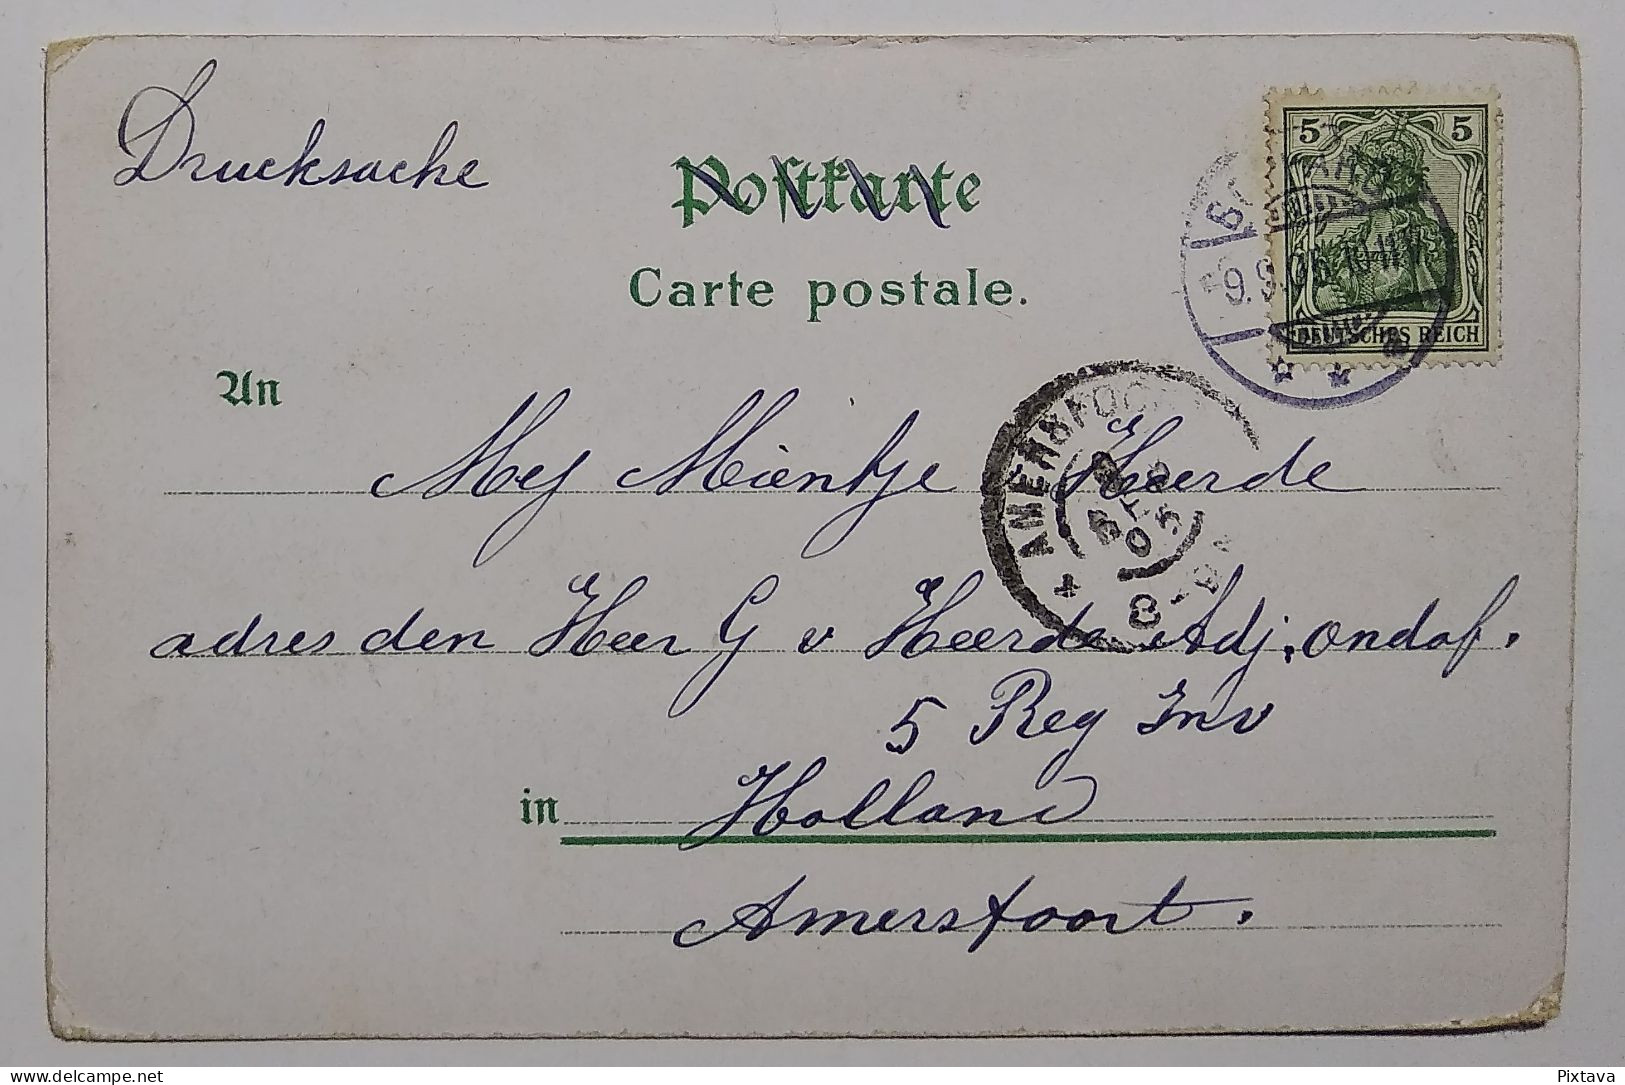 Germany / Central Bodega Coblenz / Inhaber Max Menzel / 1905 / Restaurant / Litho - Zu Identifizieren